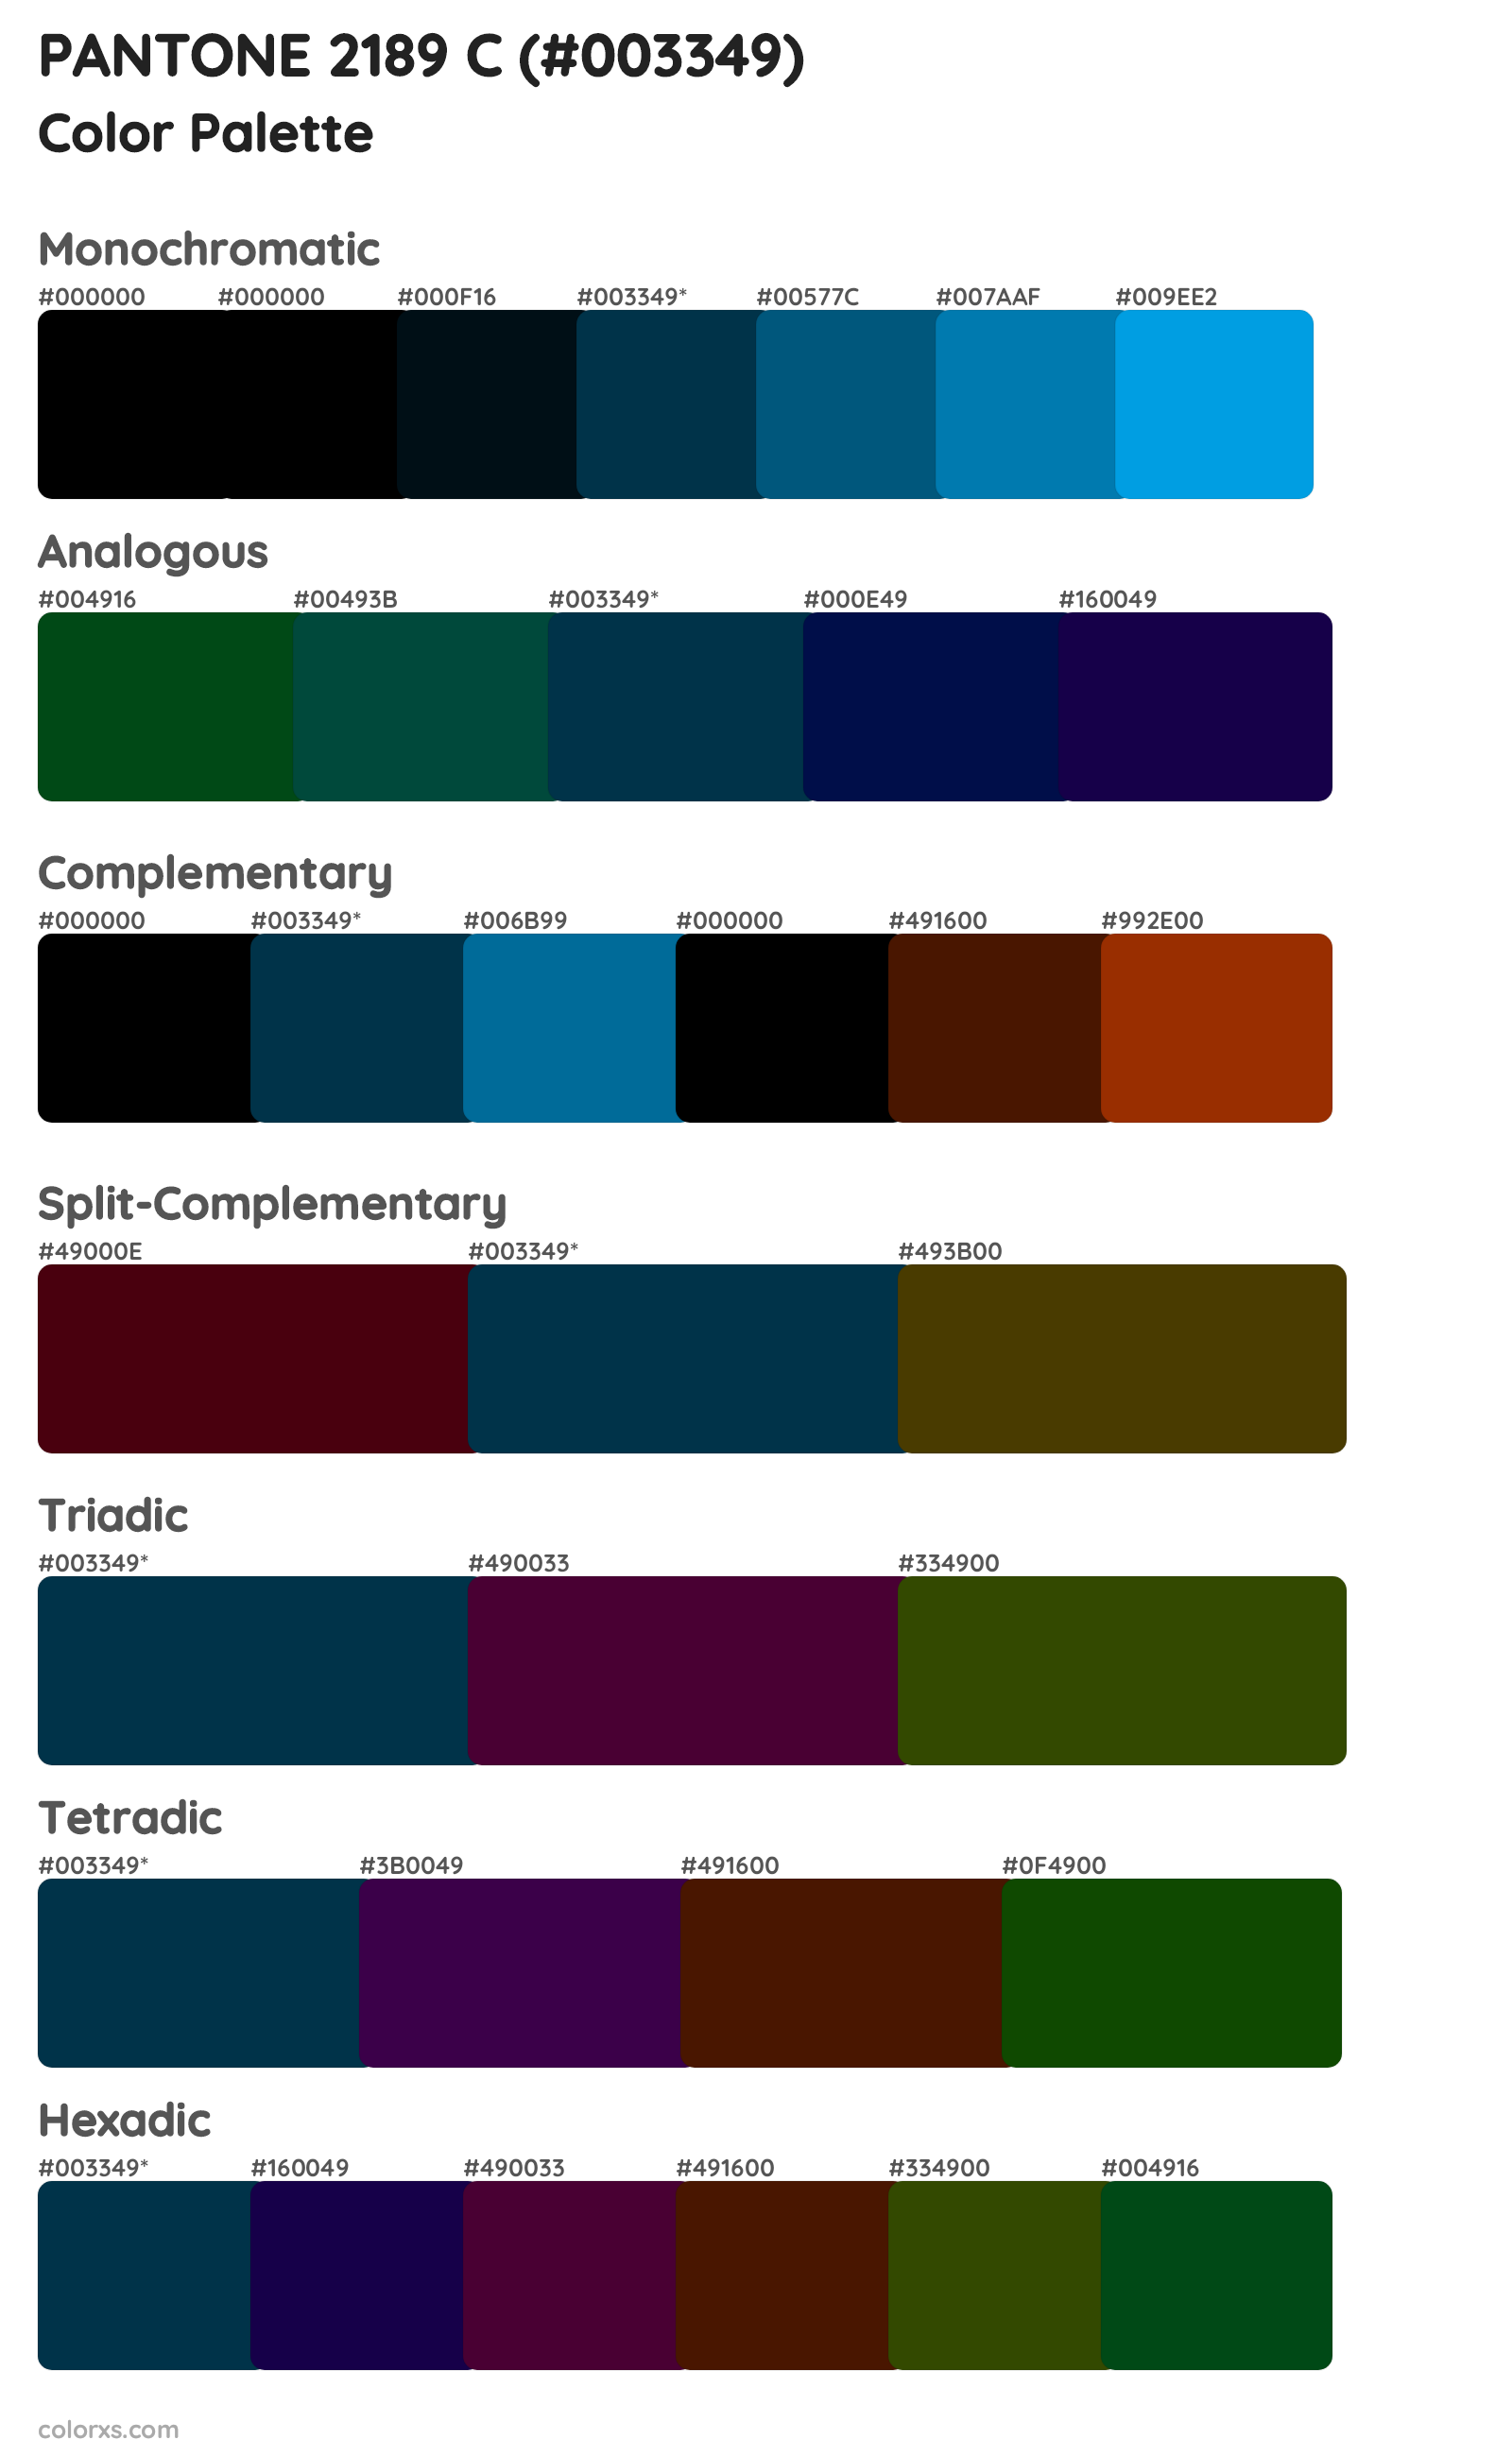 PANTONE 2189 C Color Scheme Palettes